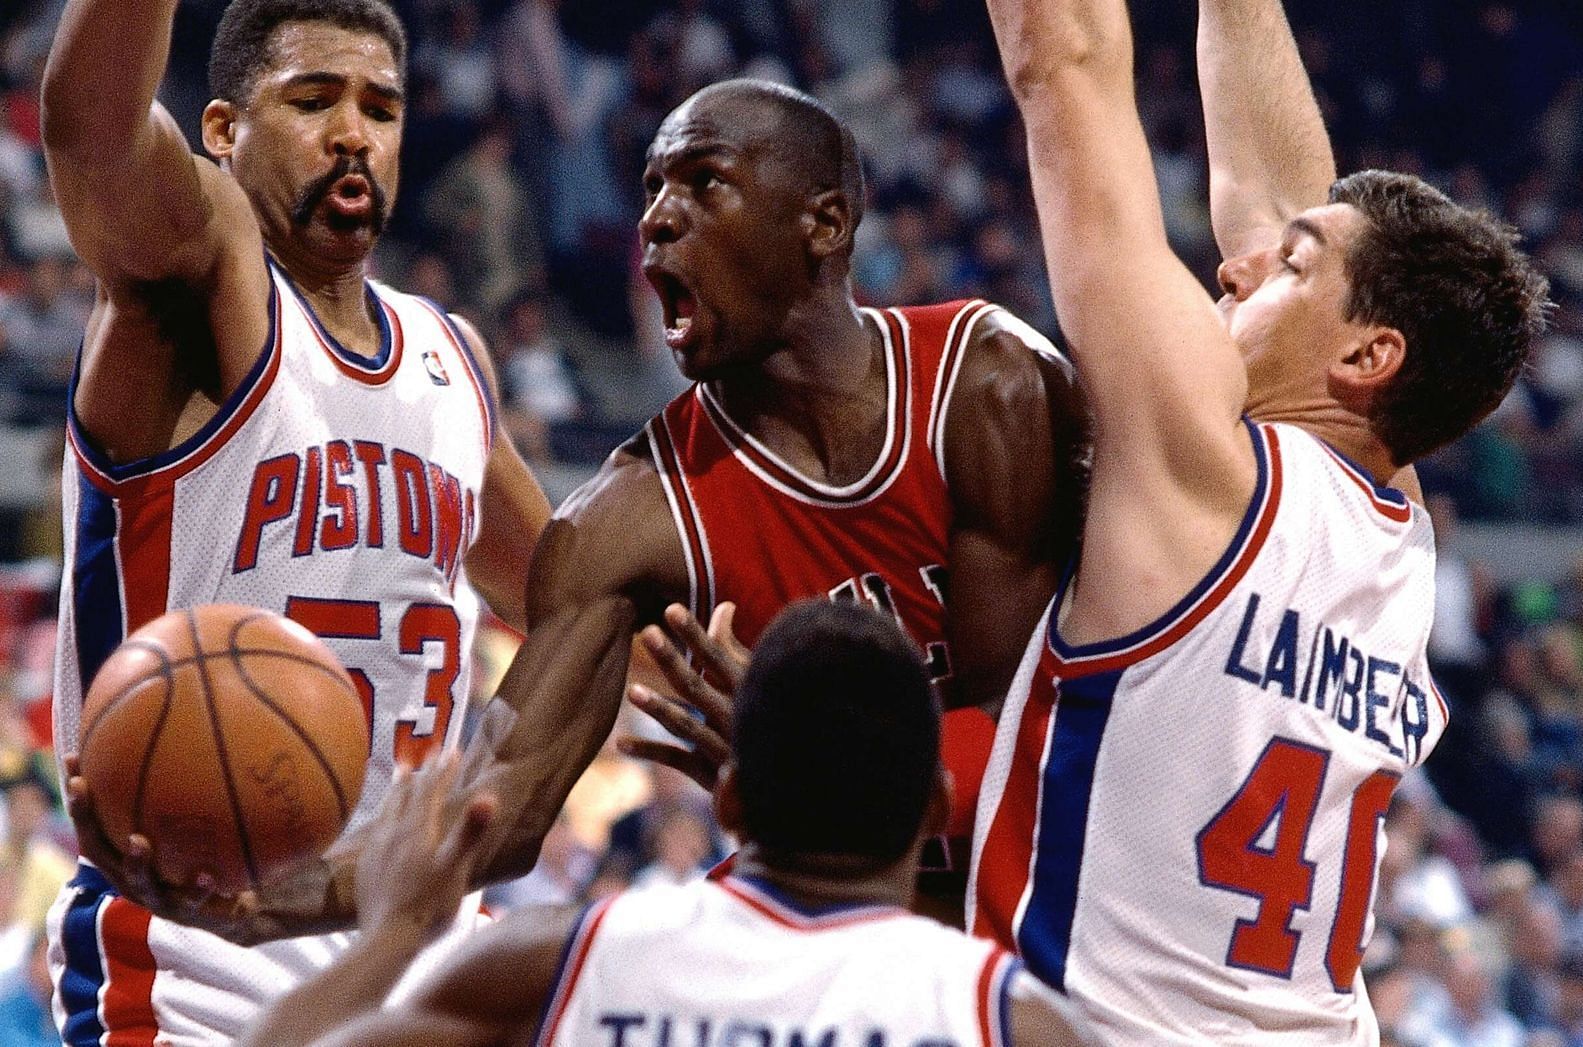 Michael Jordan a recipient of the &quot;Jordan Rules&quot; tactic